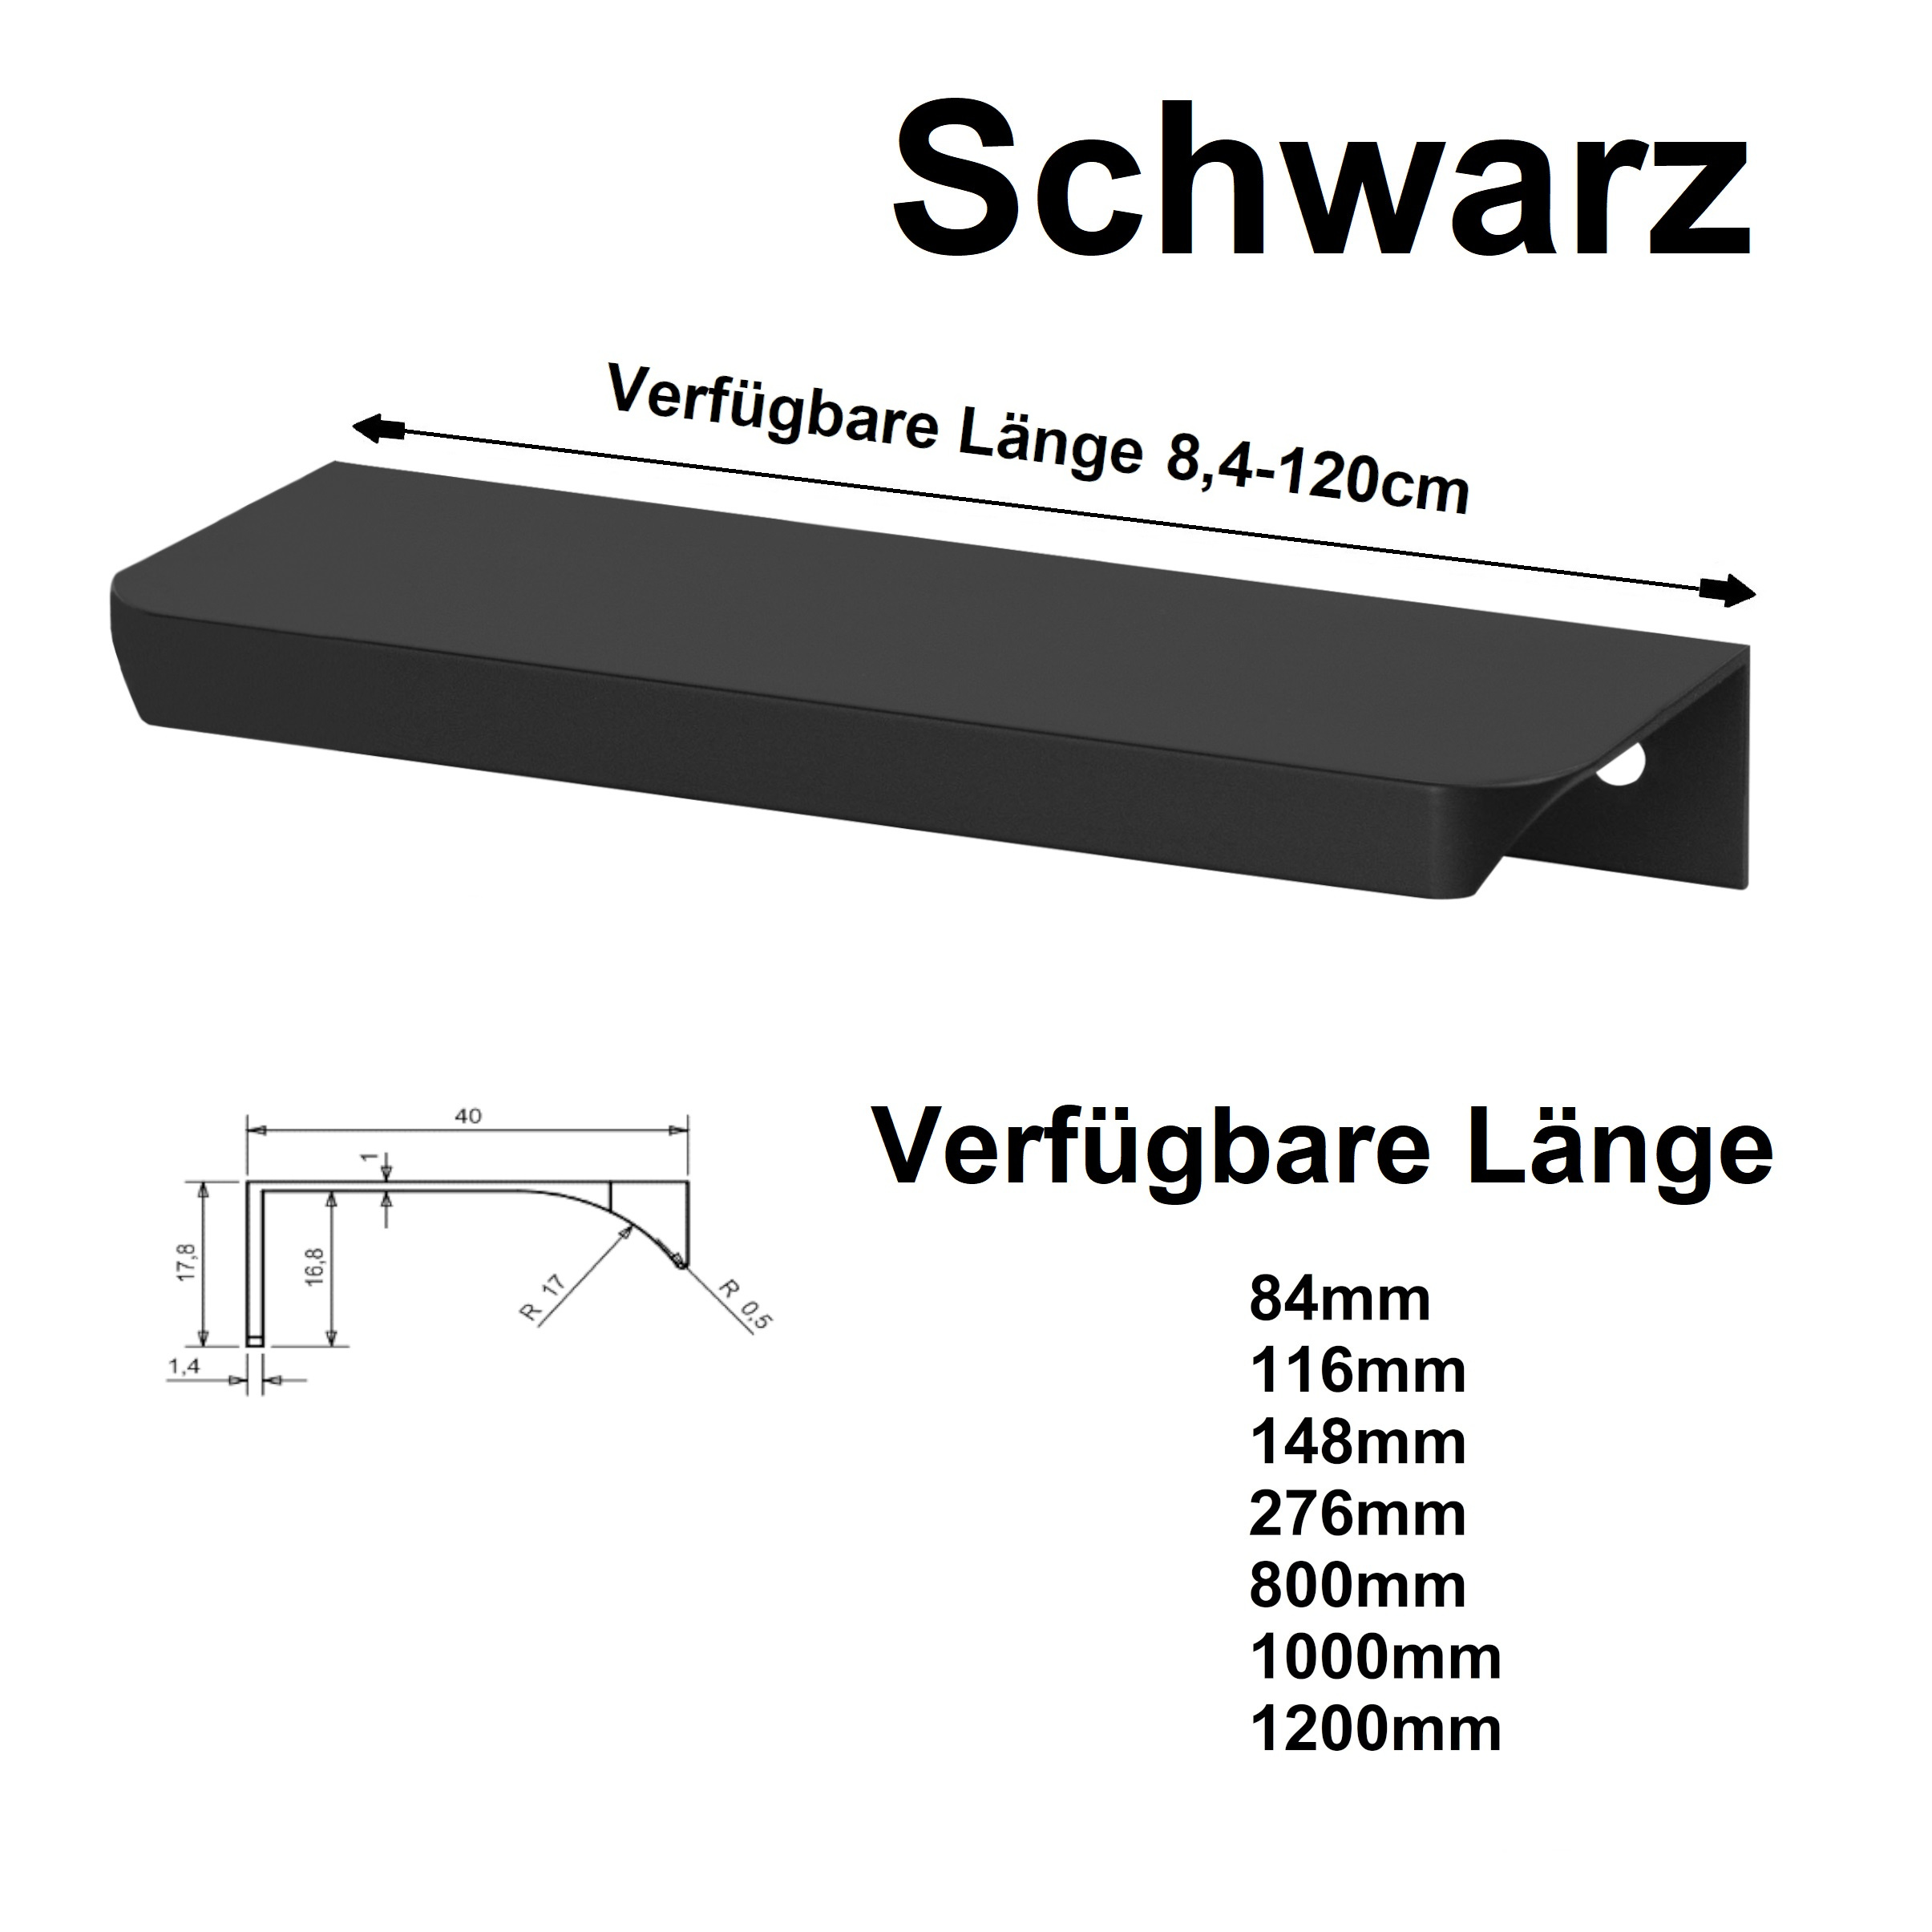 Möbelgriff Griffleiste Profilgriff Küchengriff Griffprofil viele Größen  UA06R 116-1200mm Black Matt –